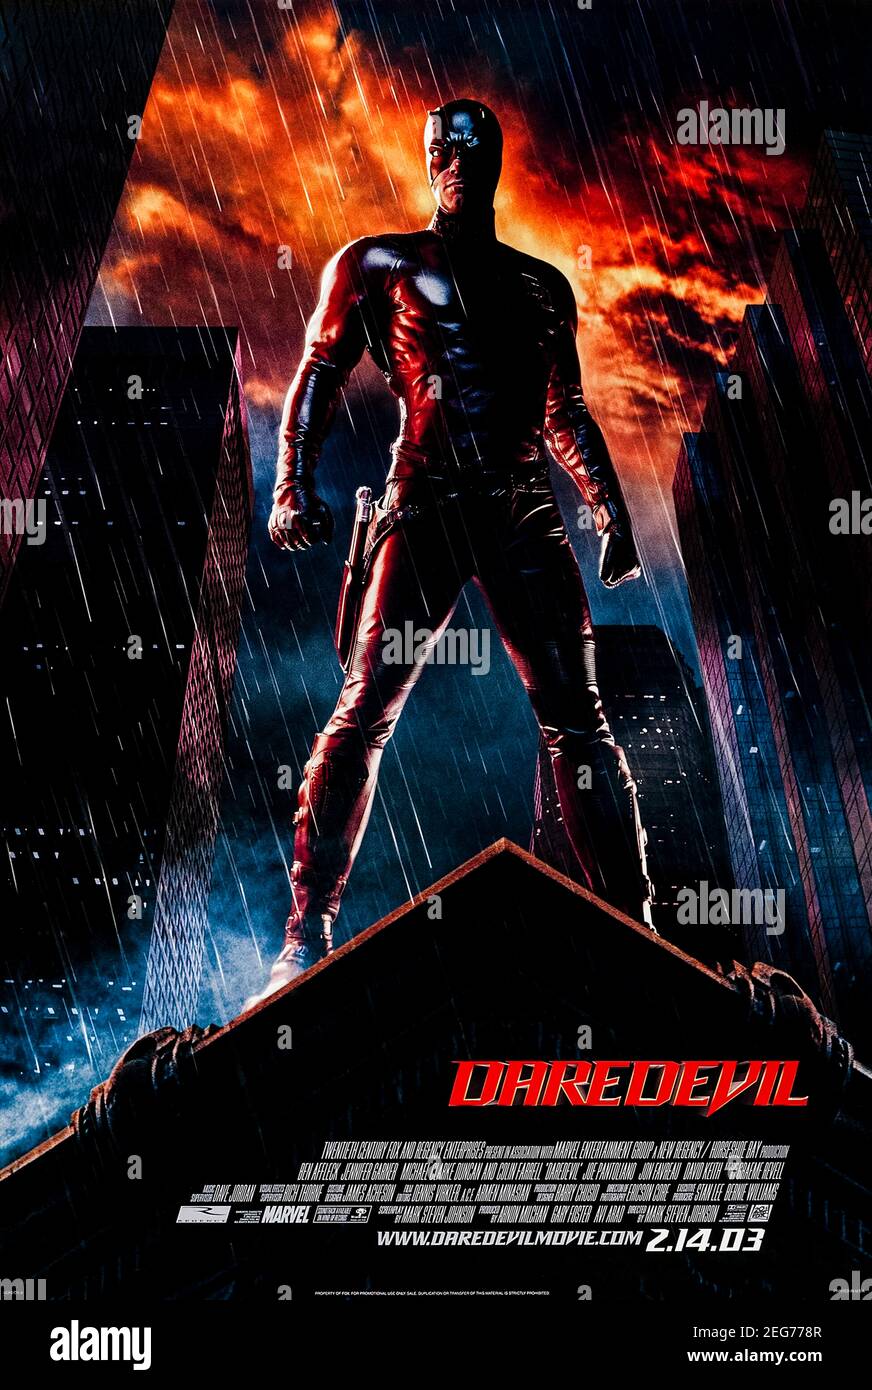 Daredevil (2003) unter der Regie von Mark Steven Johnson mit Ben Affleck, Jennifer Garner und Colin Farrell. Ein junger Waise, der bei einem Unfall geblendet wird, hat seine anderen Sinne erhöht und wird zum Daredevil. Stockfoto